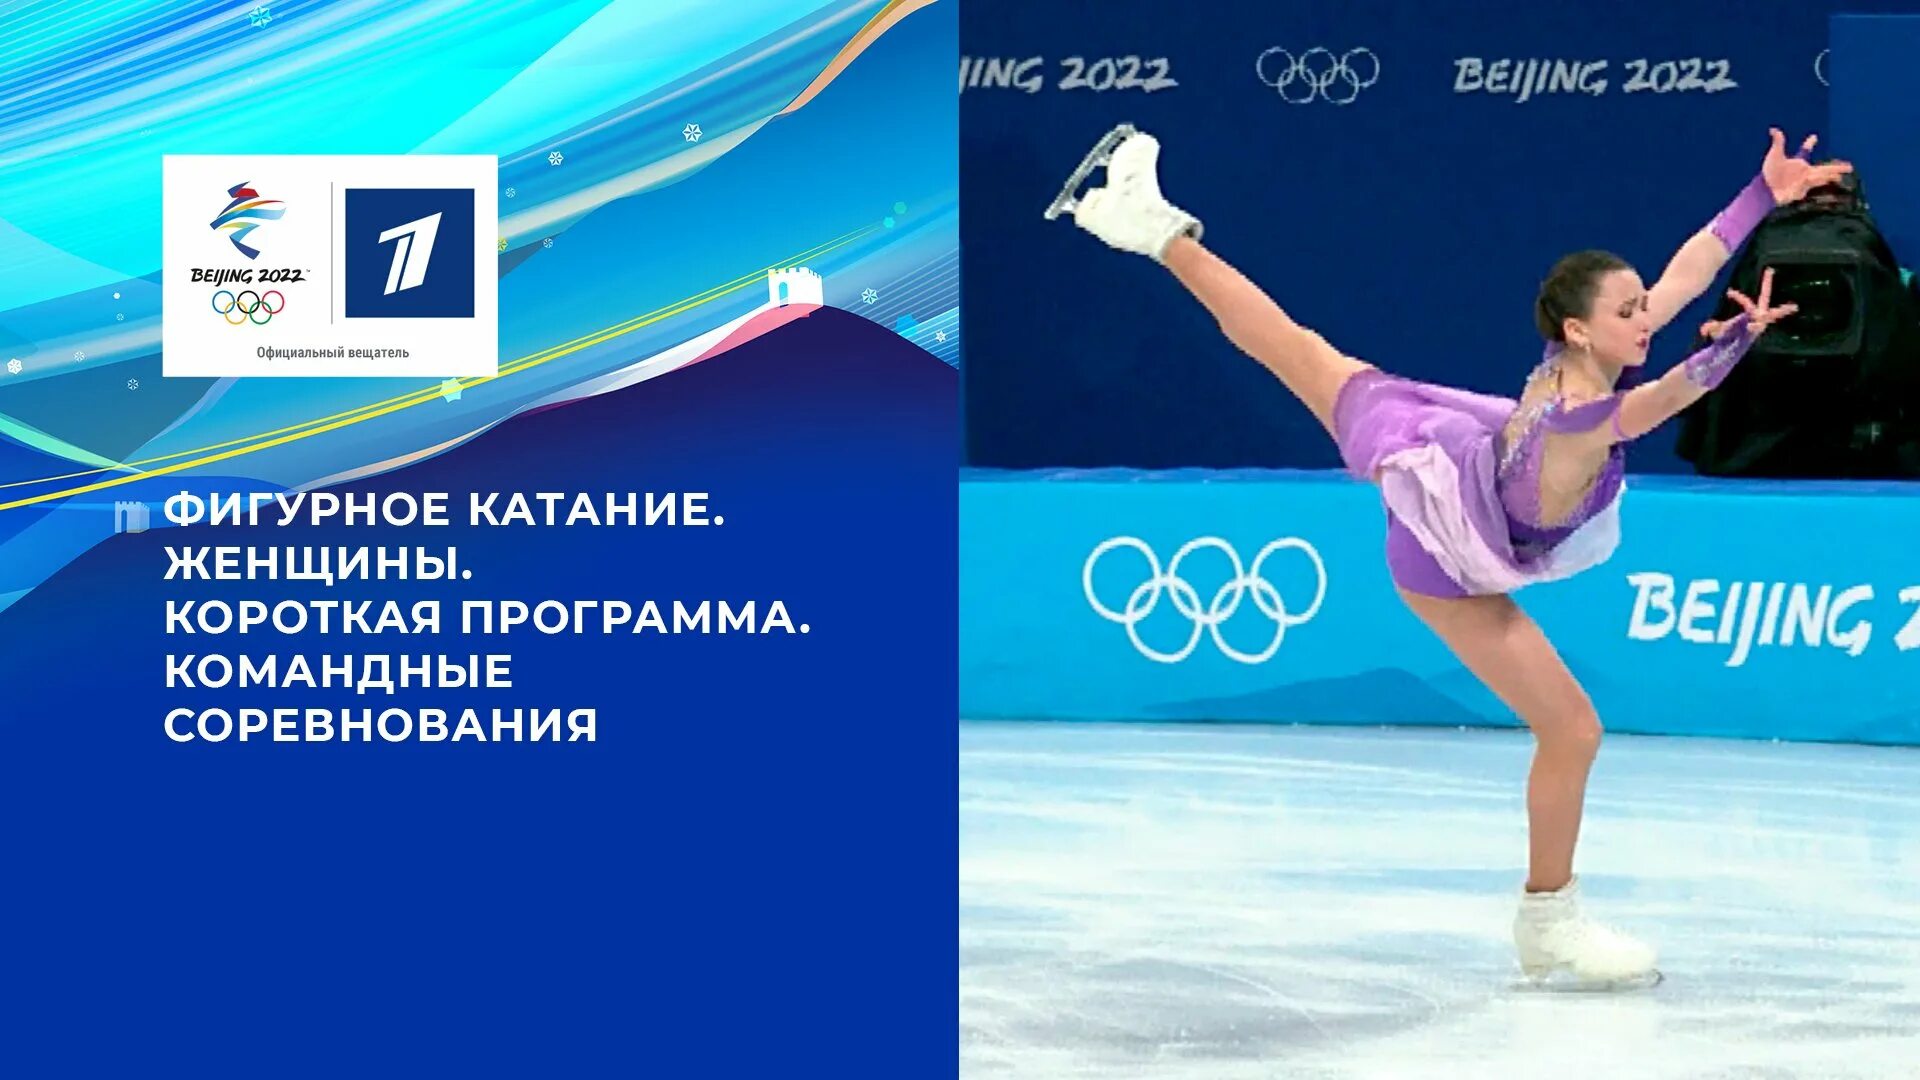 ОИ 2022 фигурное катание Камила Валиева. Олимпийские игры 2022 фигурное катание женщины. Короткая программа женщины.